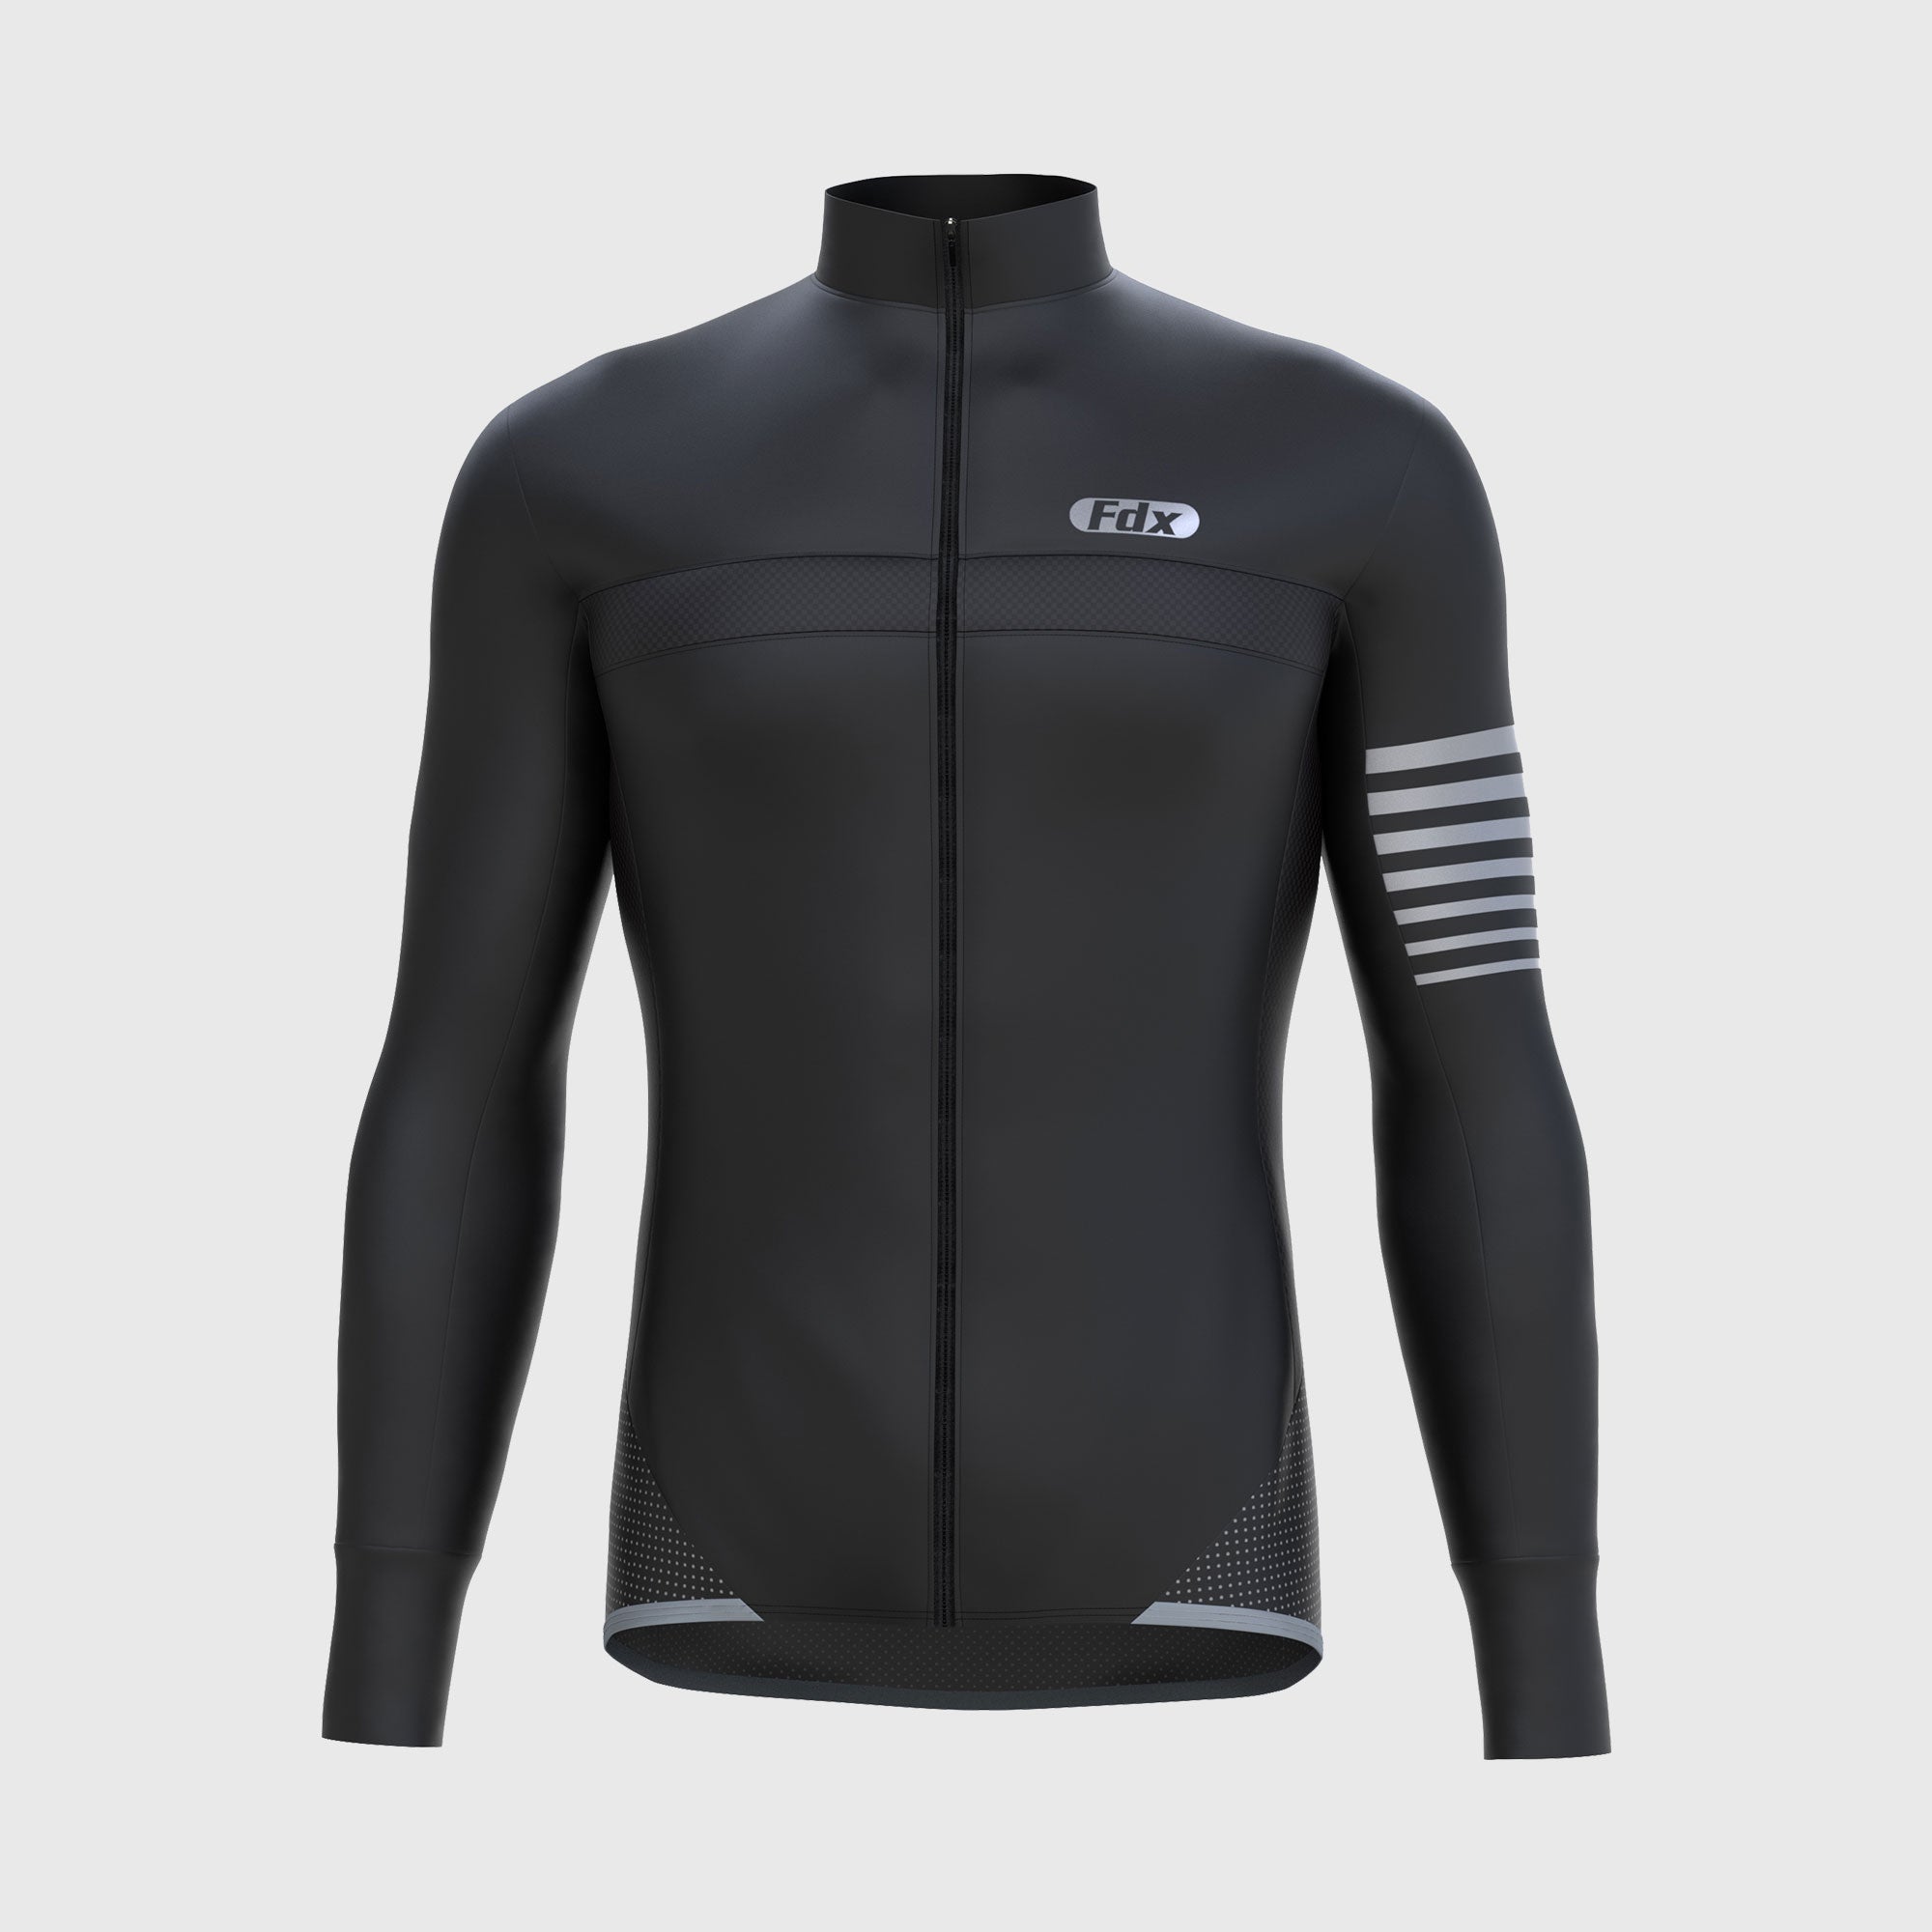 Fdx Men's Black Best Long Sleeve Cycling Jersey for Winter Roubaix Thermal Fleece Road Bike Wear Top Full Zipper, Pockets & Hi viz Reflectors - All Day